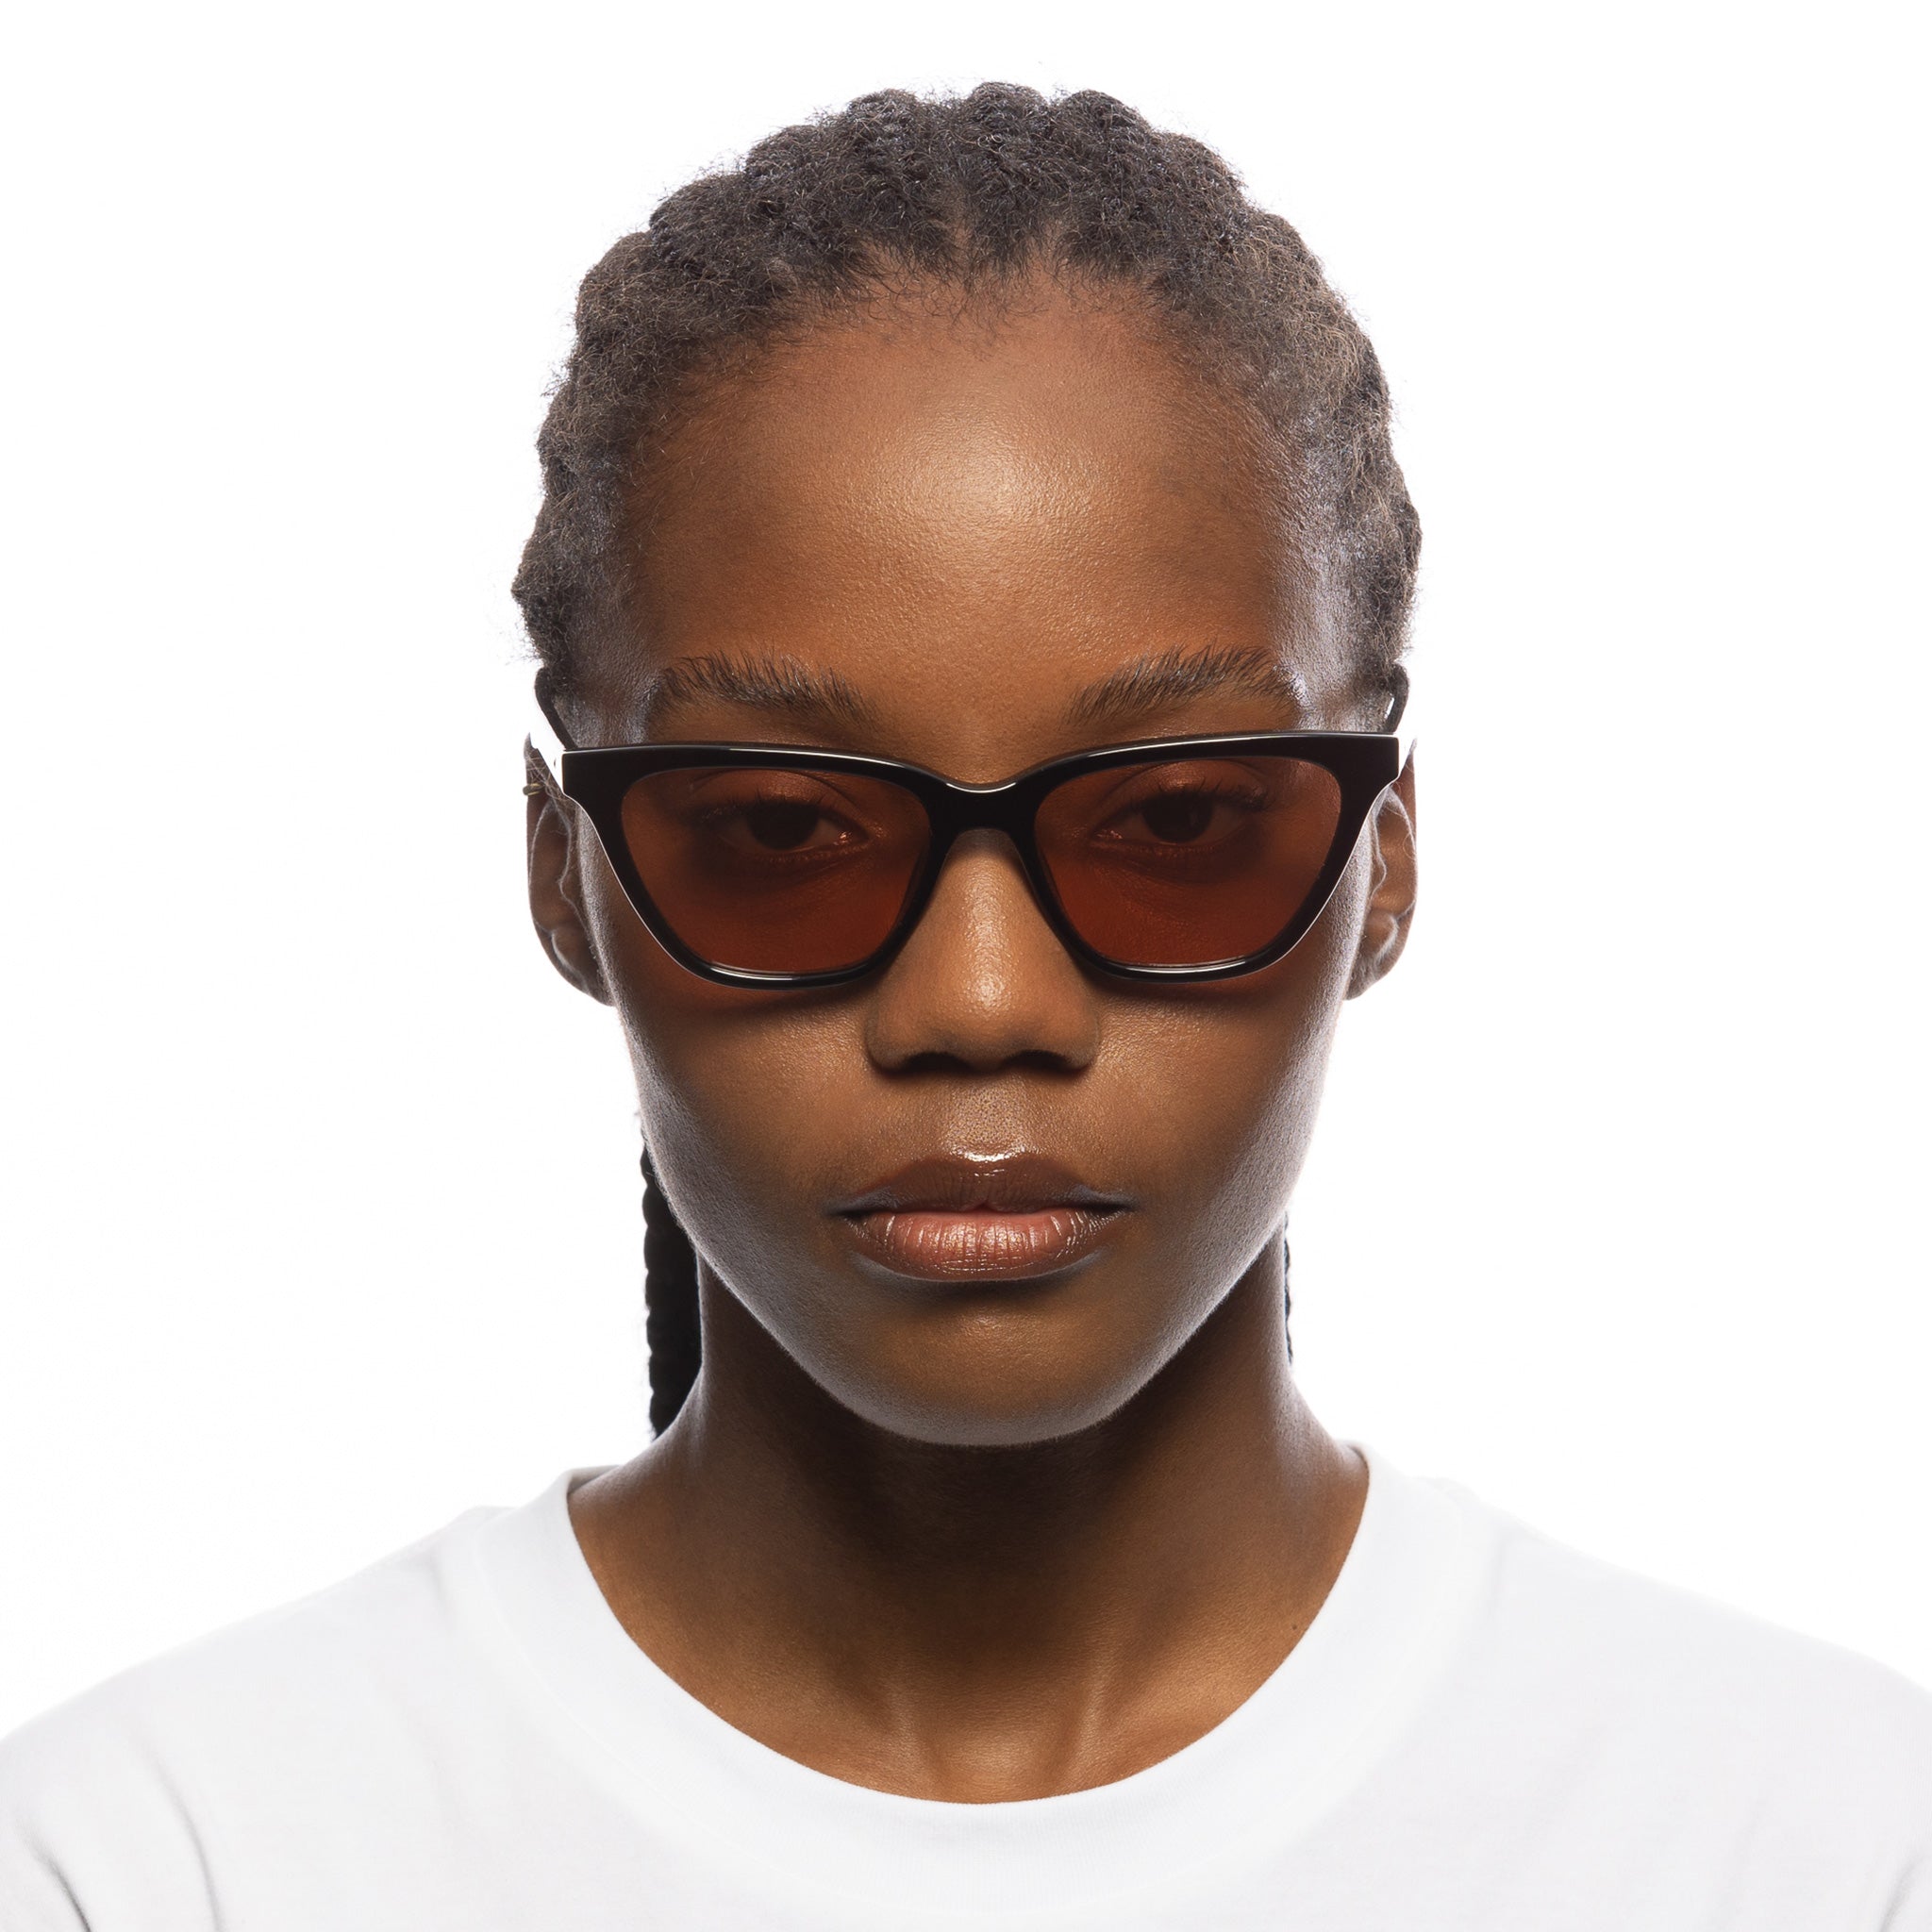 Le Specs Sunglasses - Unfaithful - Black